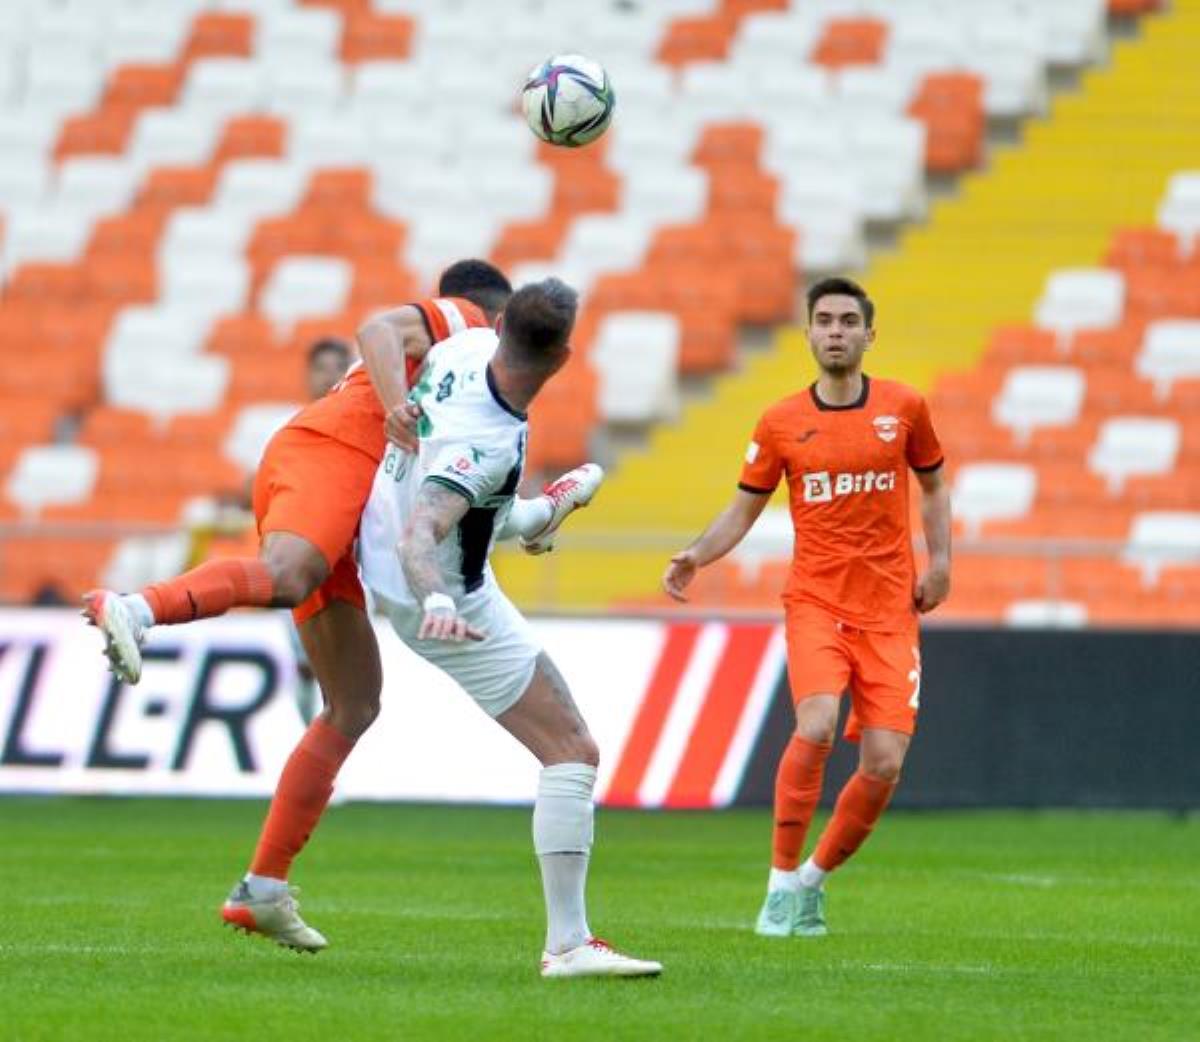 Adanaspor, sahasında Altaş Denizlispor ile 0-0 berabere kaldı